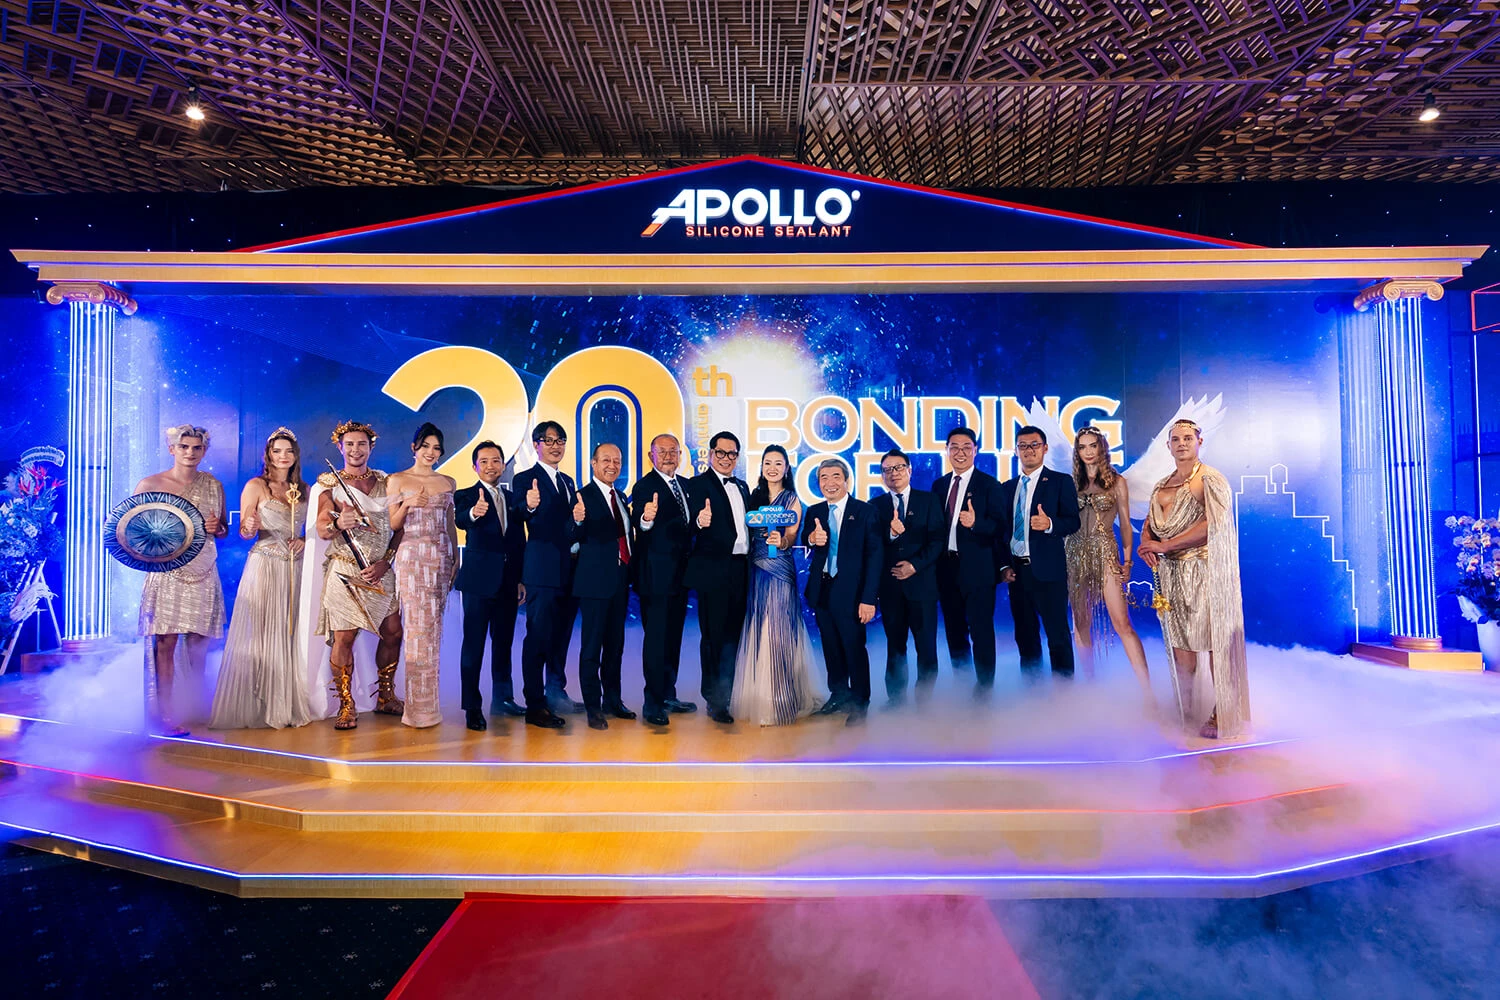 Đại Lễ Kỷ Niệm 20 Năm Apollo Silicone Phát Triển Bền Vững Tại Việt Nam